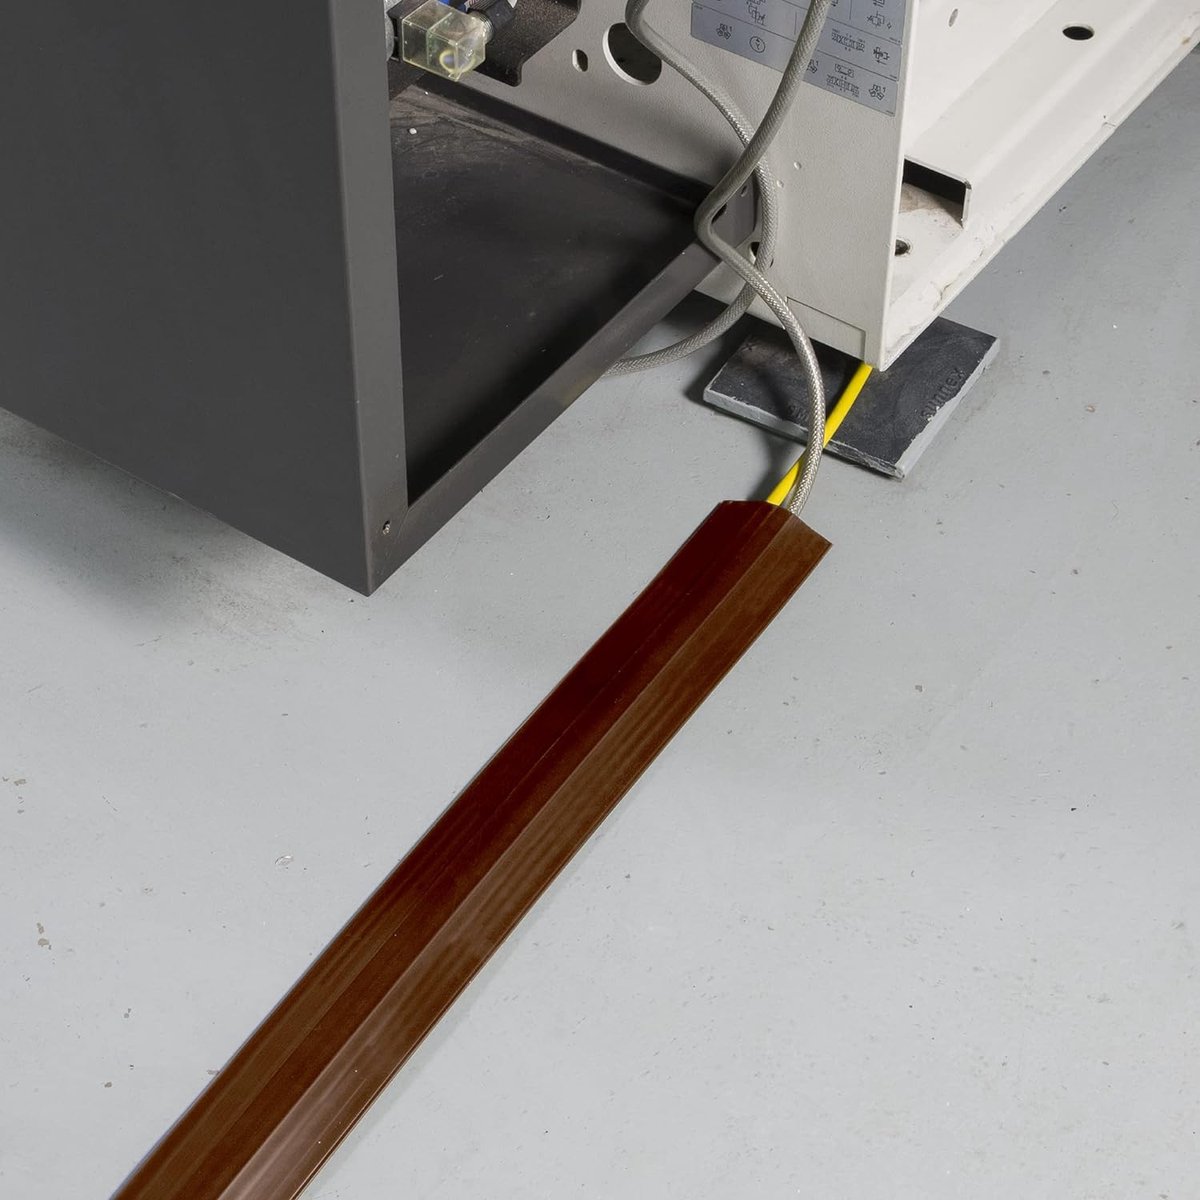 Vloerkabelbeschermer, snoerbeschermer, voorgesneden achterkant, beschermt kabels en voorkomt struikelgevaar – kabelopening 17 mm (B) x 9 mm (H) – 9 meter lang, bruin